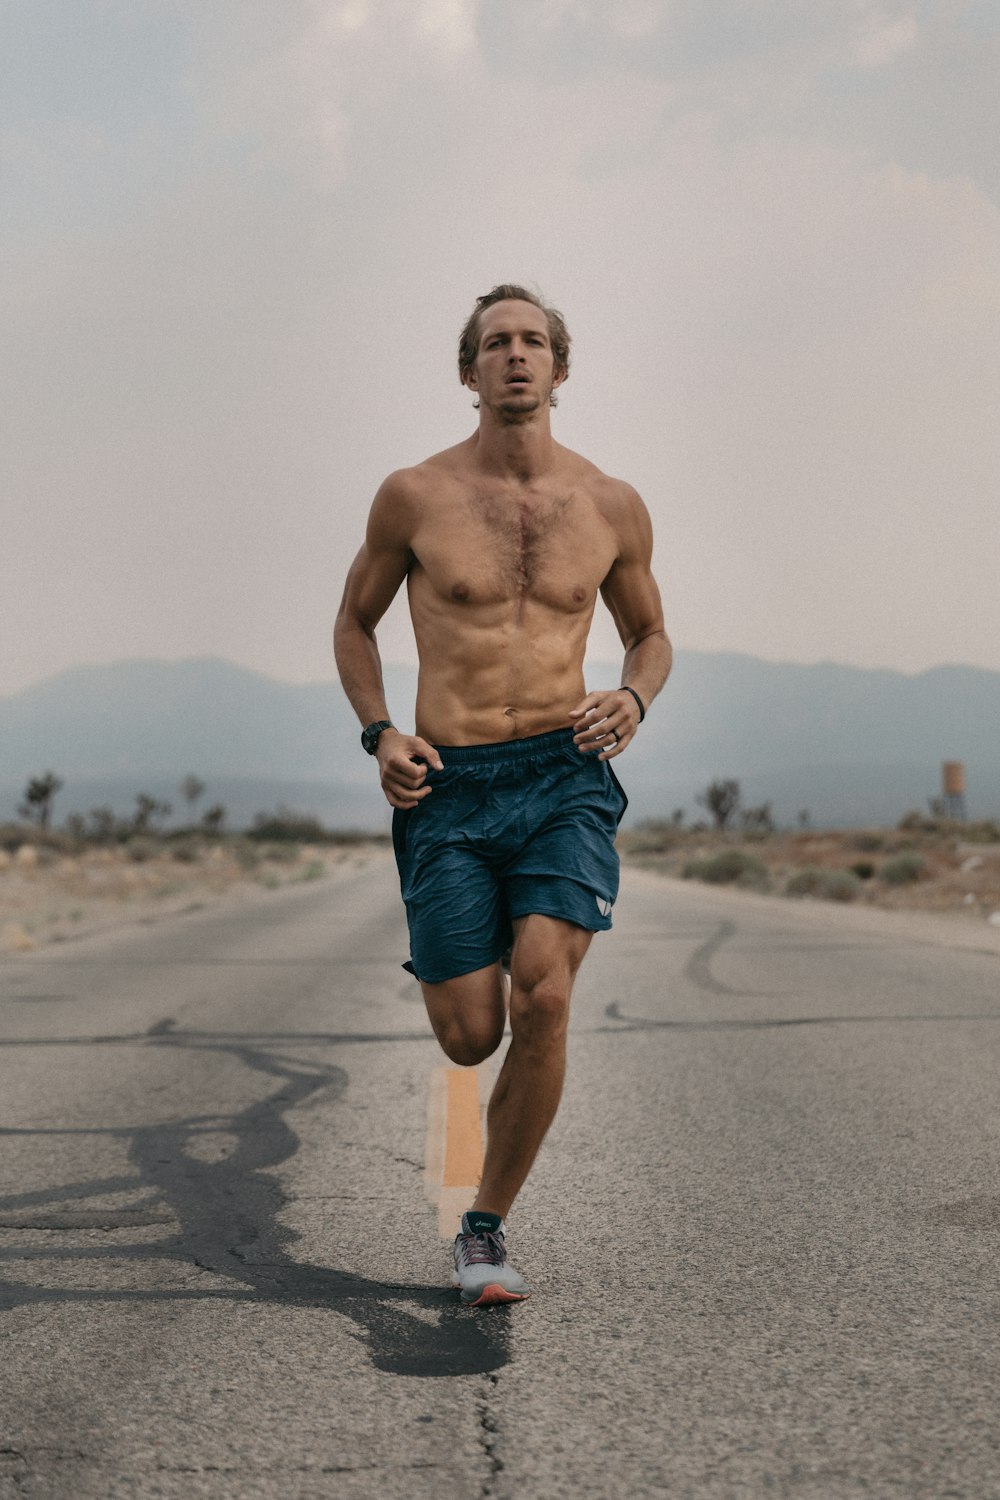 Un hombre sin camisa corriendo por una carretera